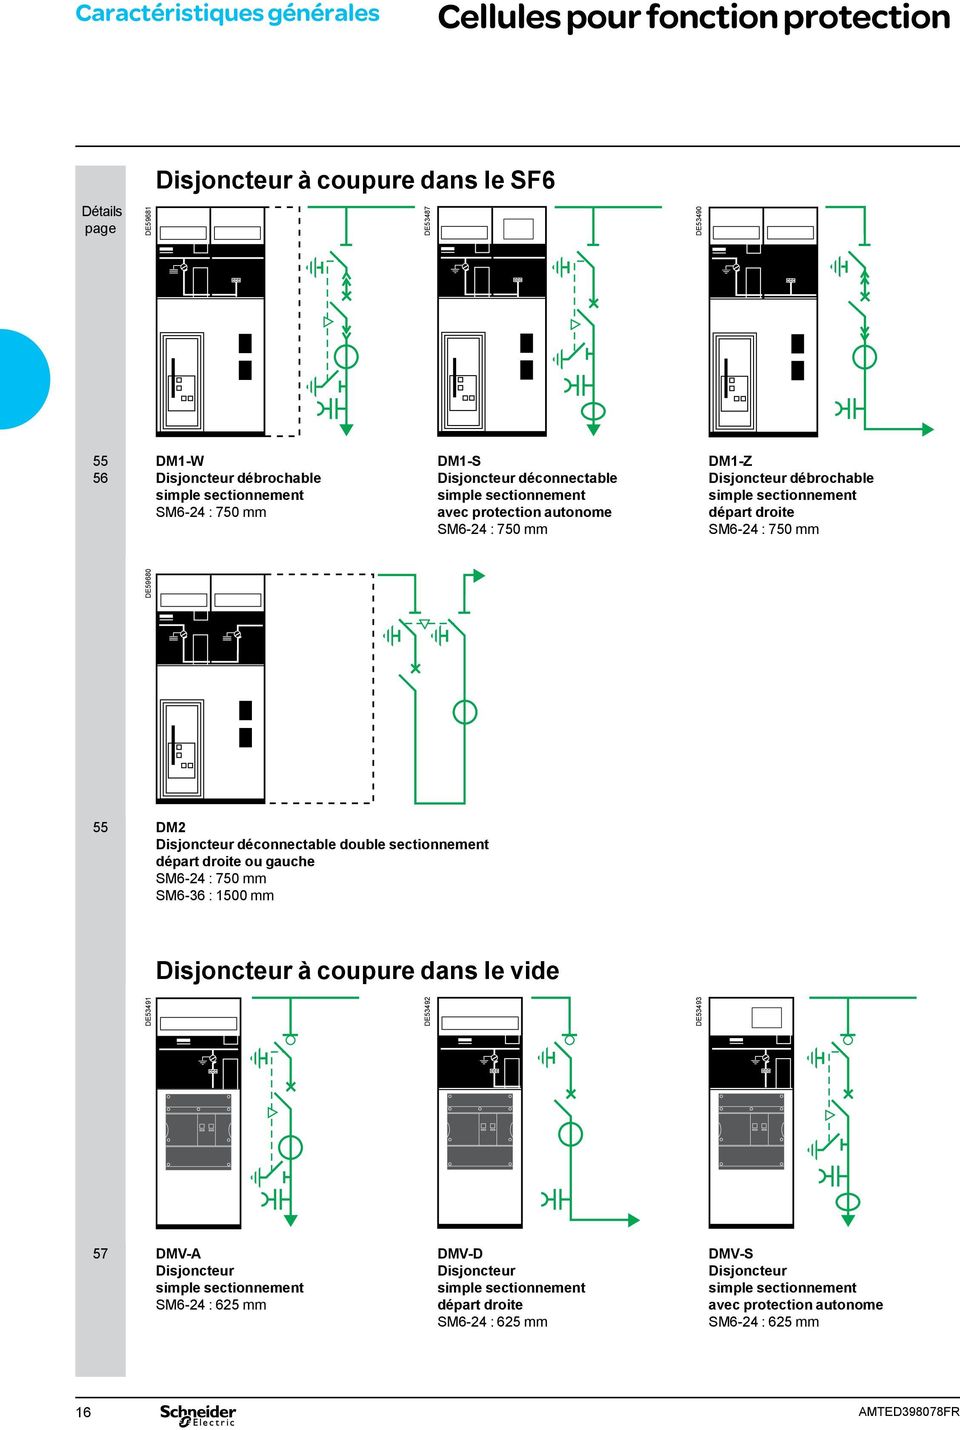 DM2 Disjoncteur déconnectable double sectionnement départ droite ou gauche SM6-24 : 750 mm SM6-36 : 1500 mm Disjoncteur à coupure dans le vide DE53491 DE53492 DE53493 57 DMV-A Disjoncteur simple